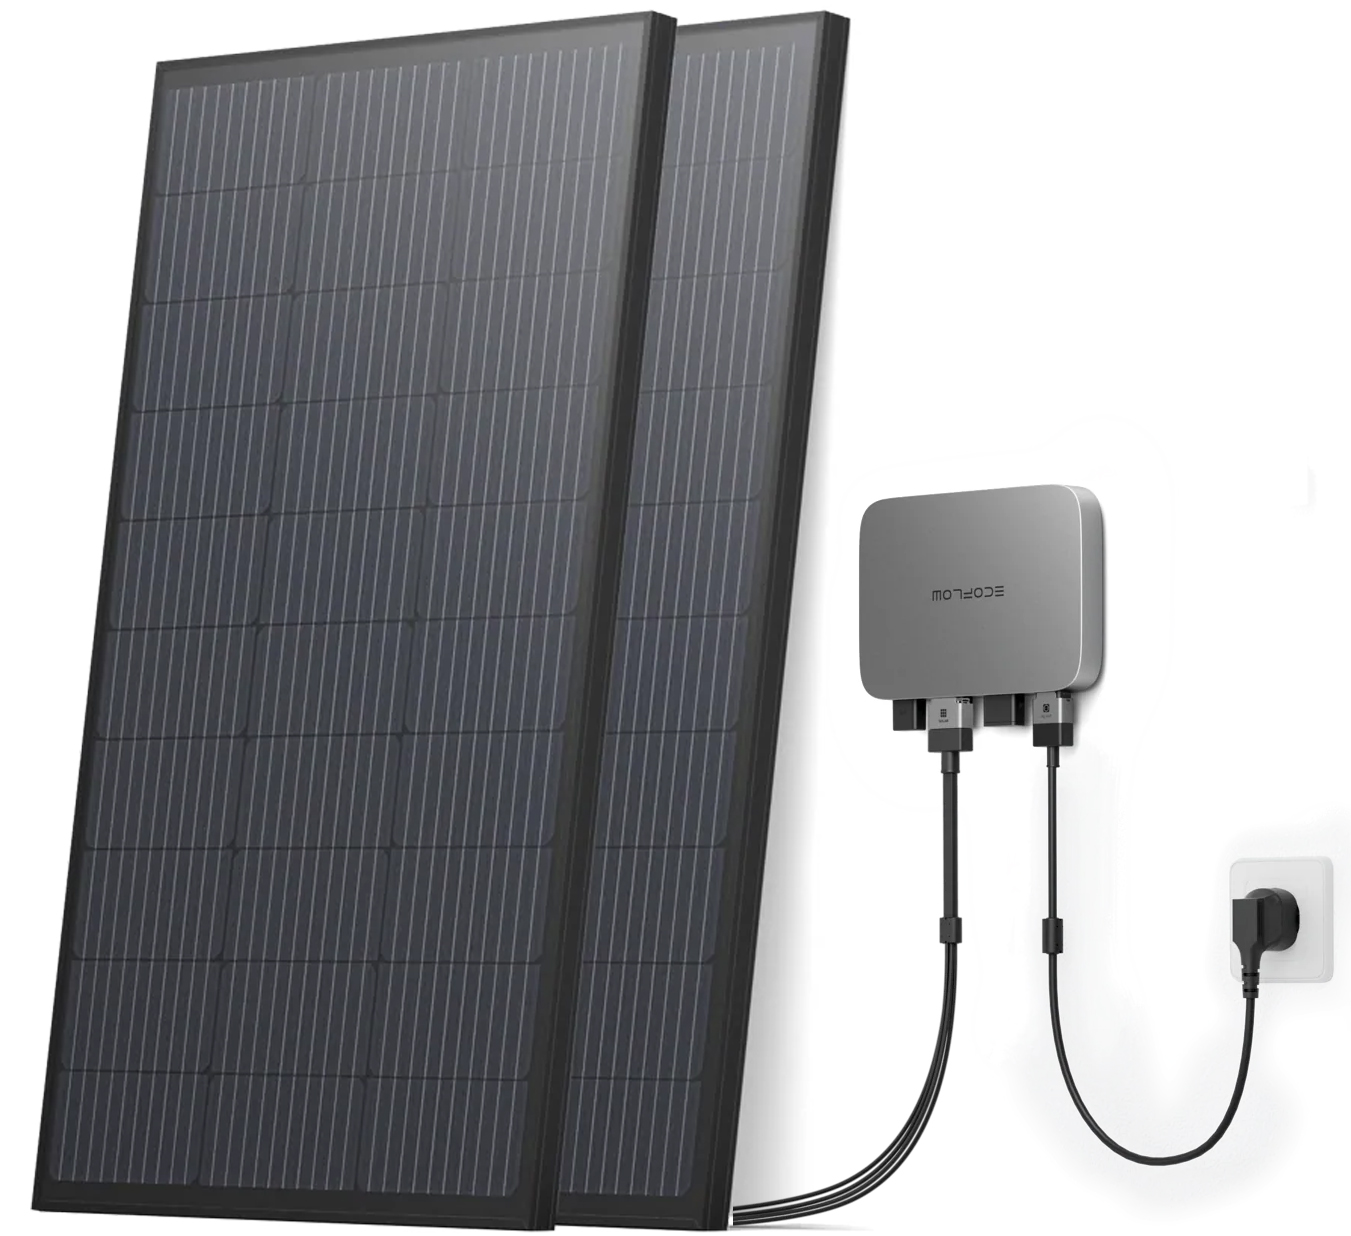 Система резервного живлення для квартири EcoFlow PowerStream - микроинвертор 600W + 2 x 400W стационарные солнечные панели